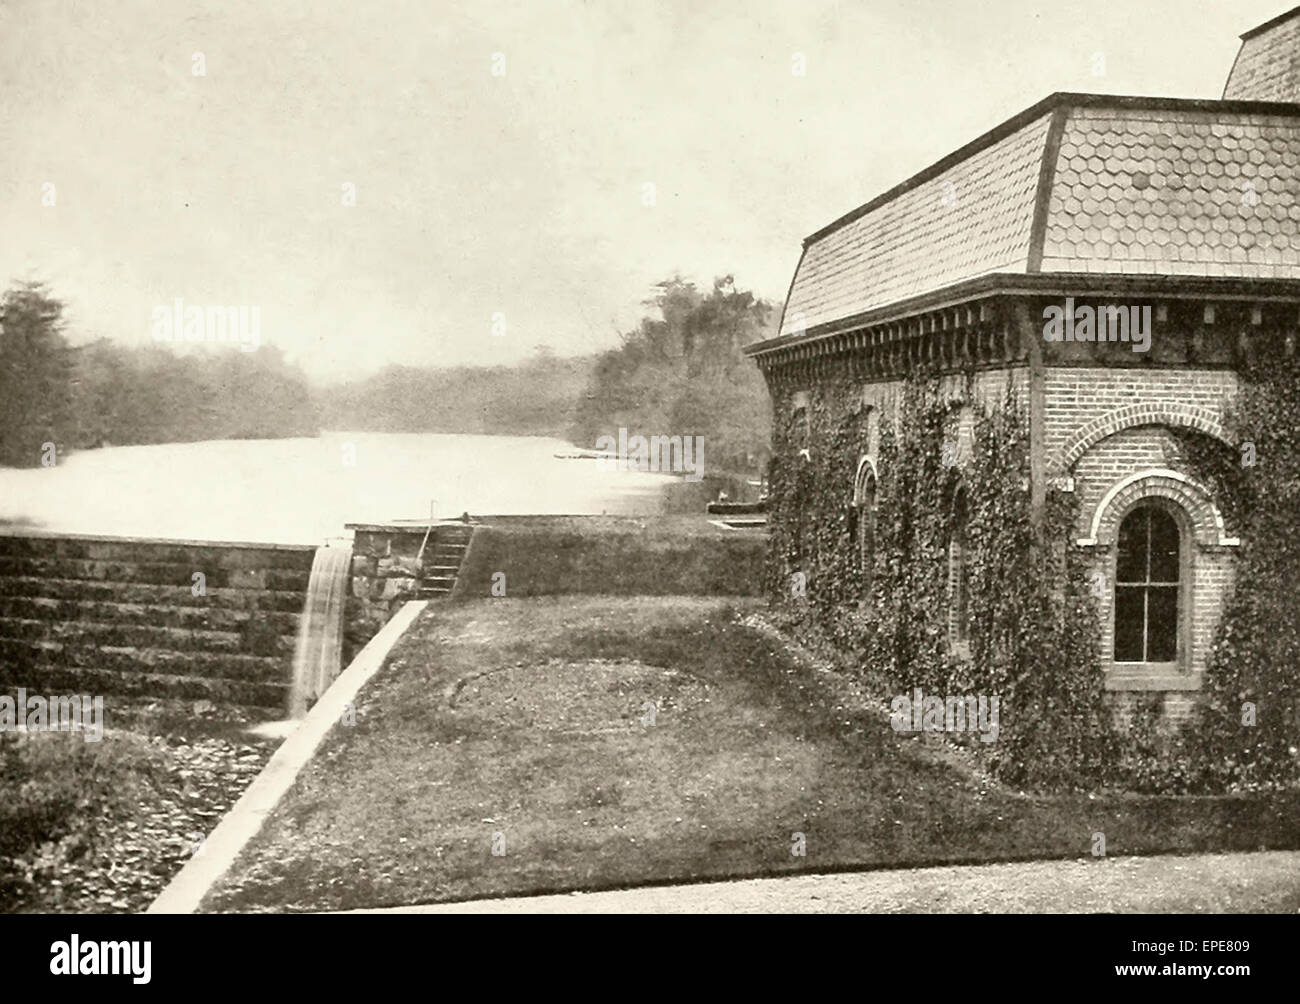 Weston Mühlen - Wasser-Quelle für New Brunswick, NJ, ca. 1905 Stockfoto